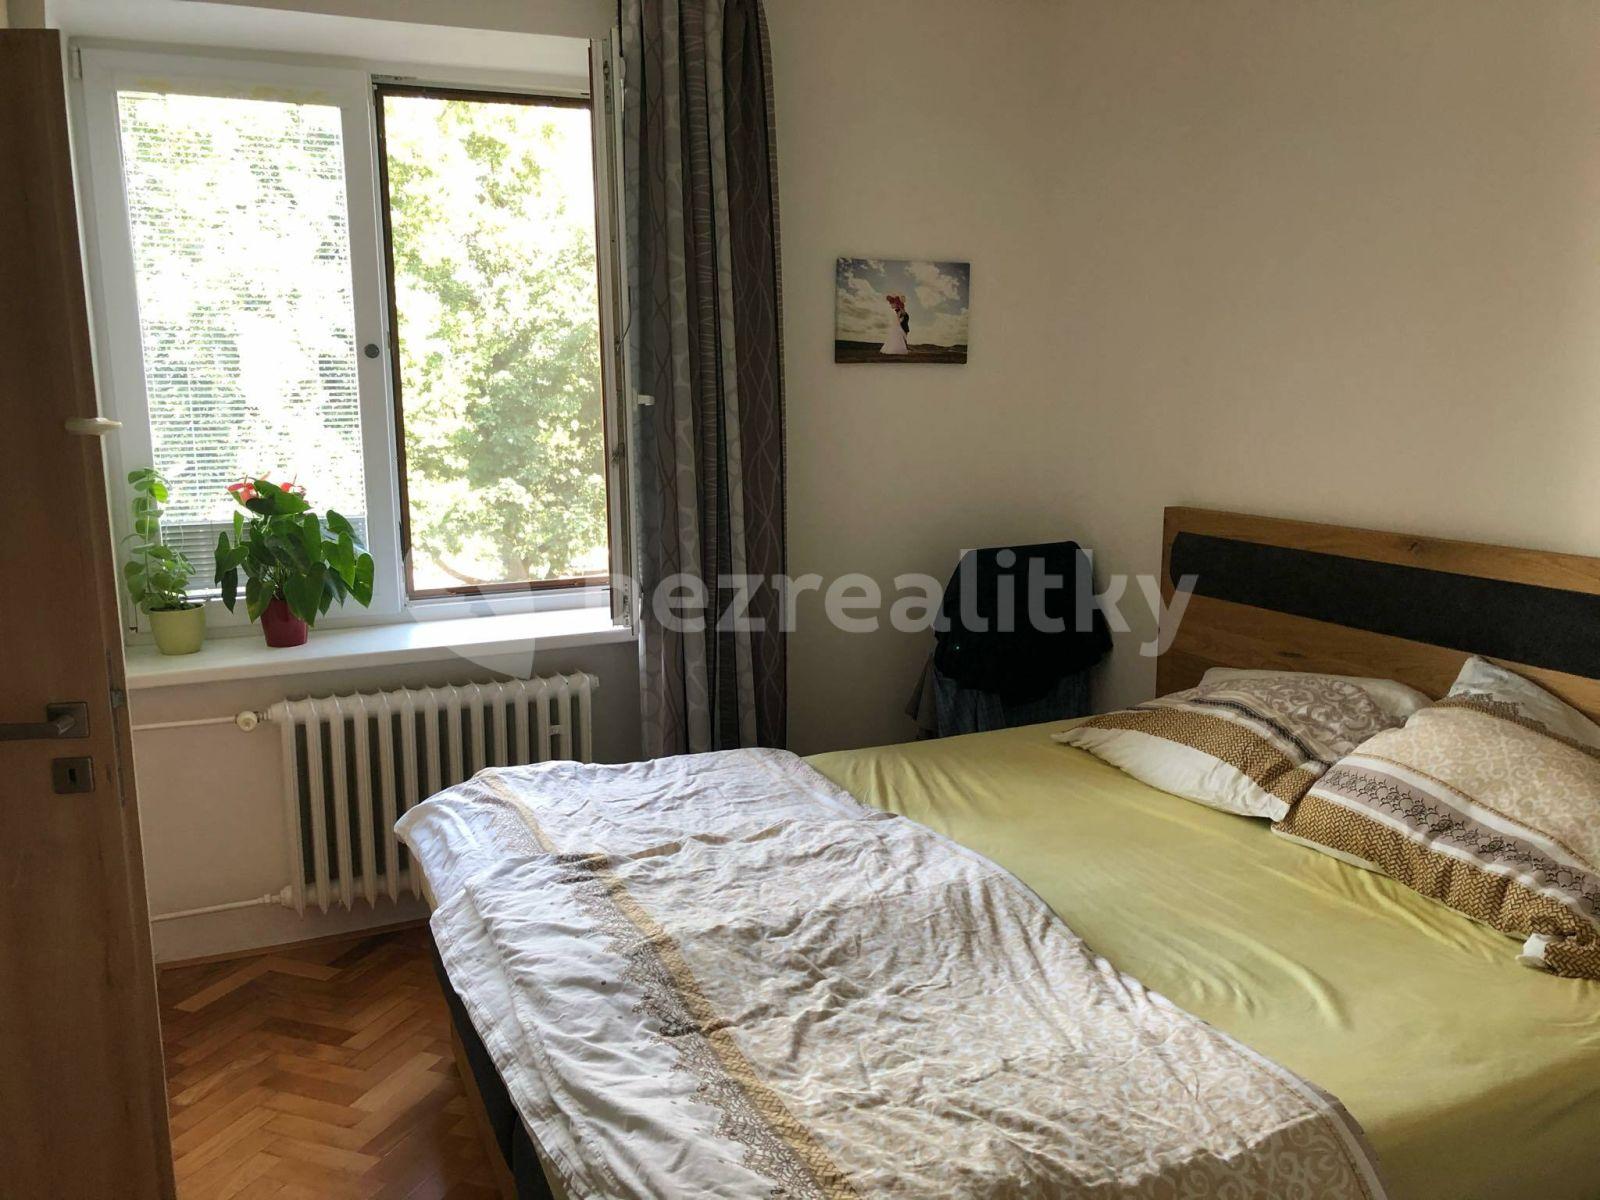 3 bedroom flat to rent, 69 m², Okružní, Ivančice, Jihomoravský Region